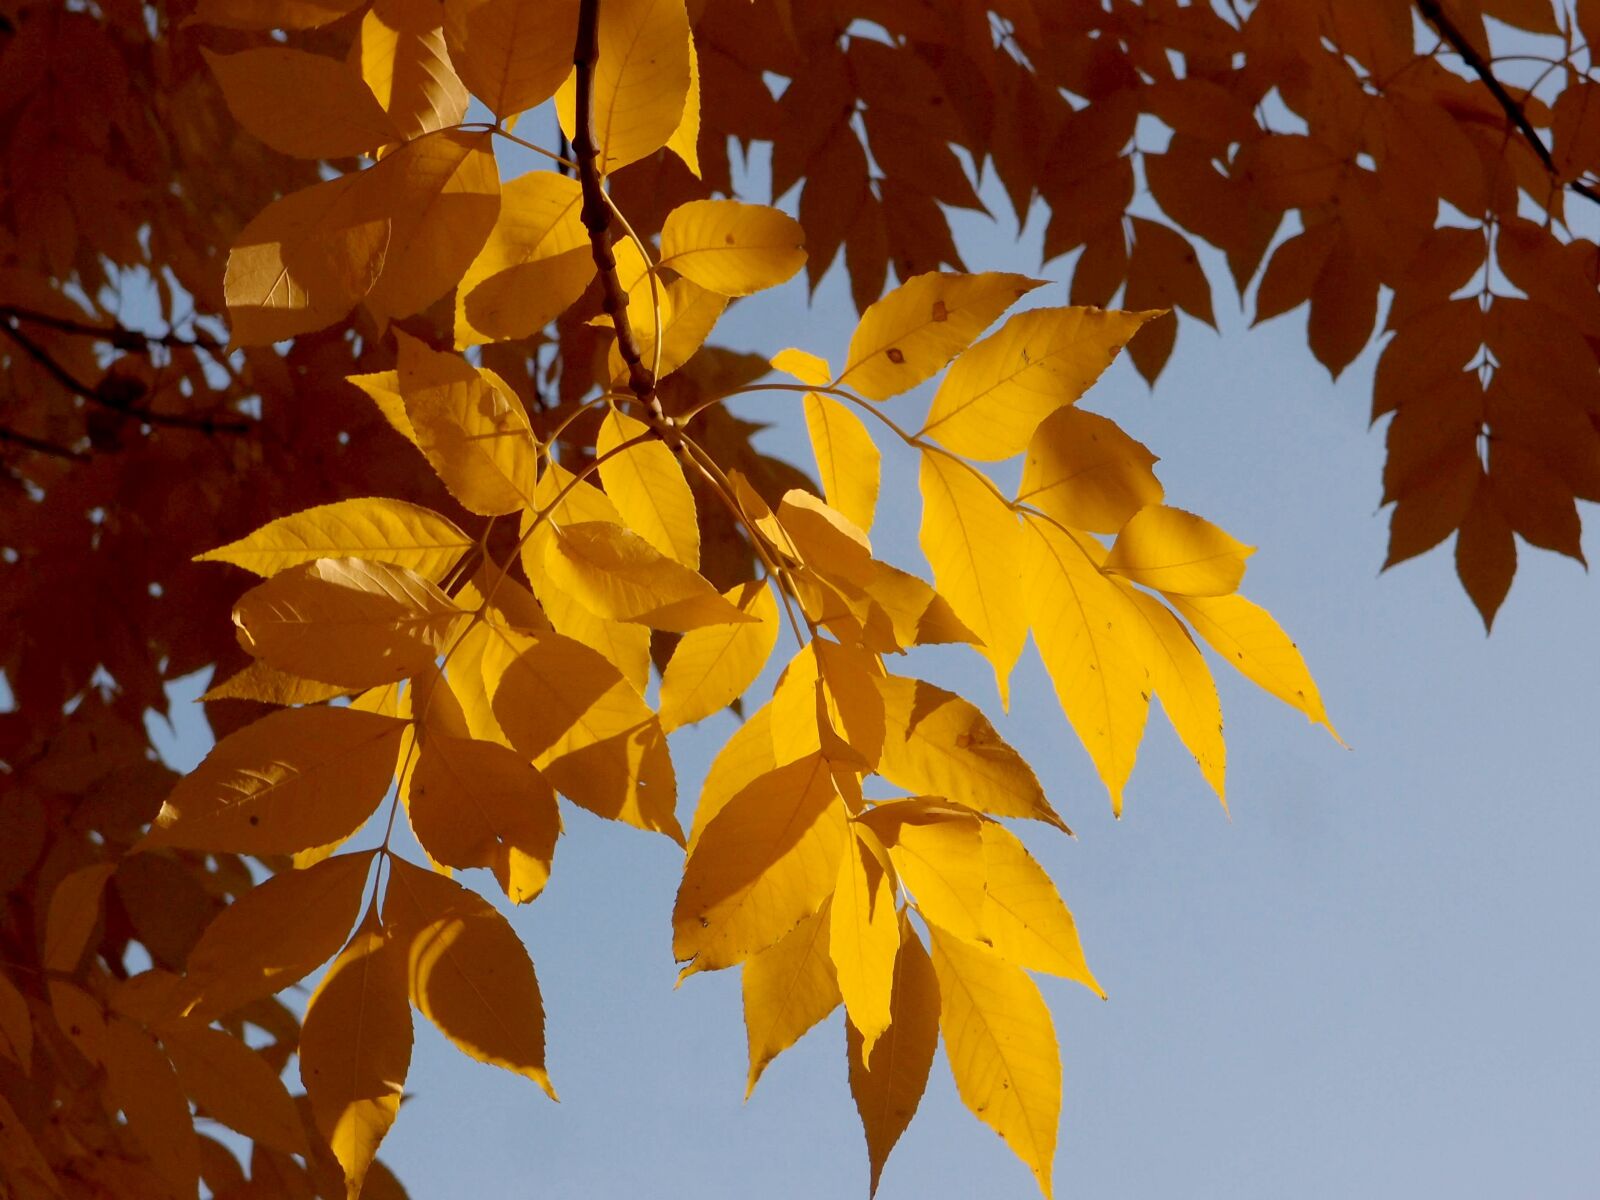 Olympus XZ-1 sample photo. Autumn, foliage, leaves photography